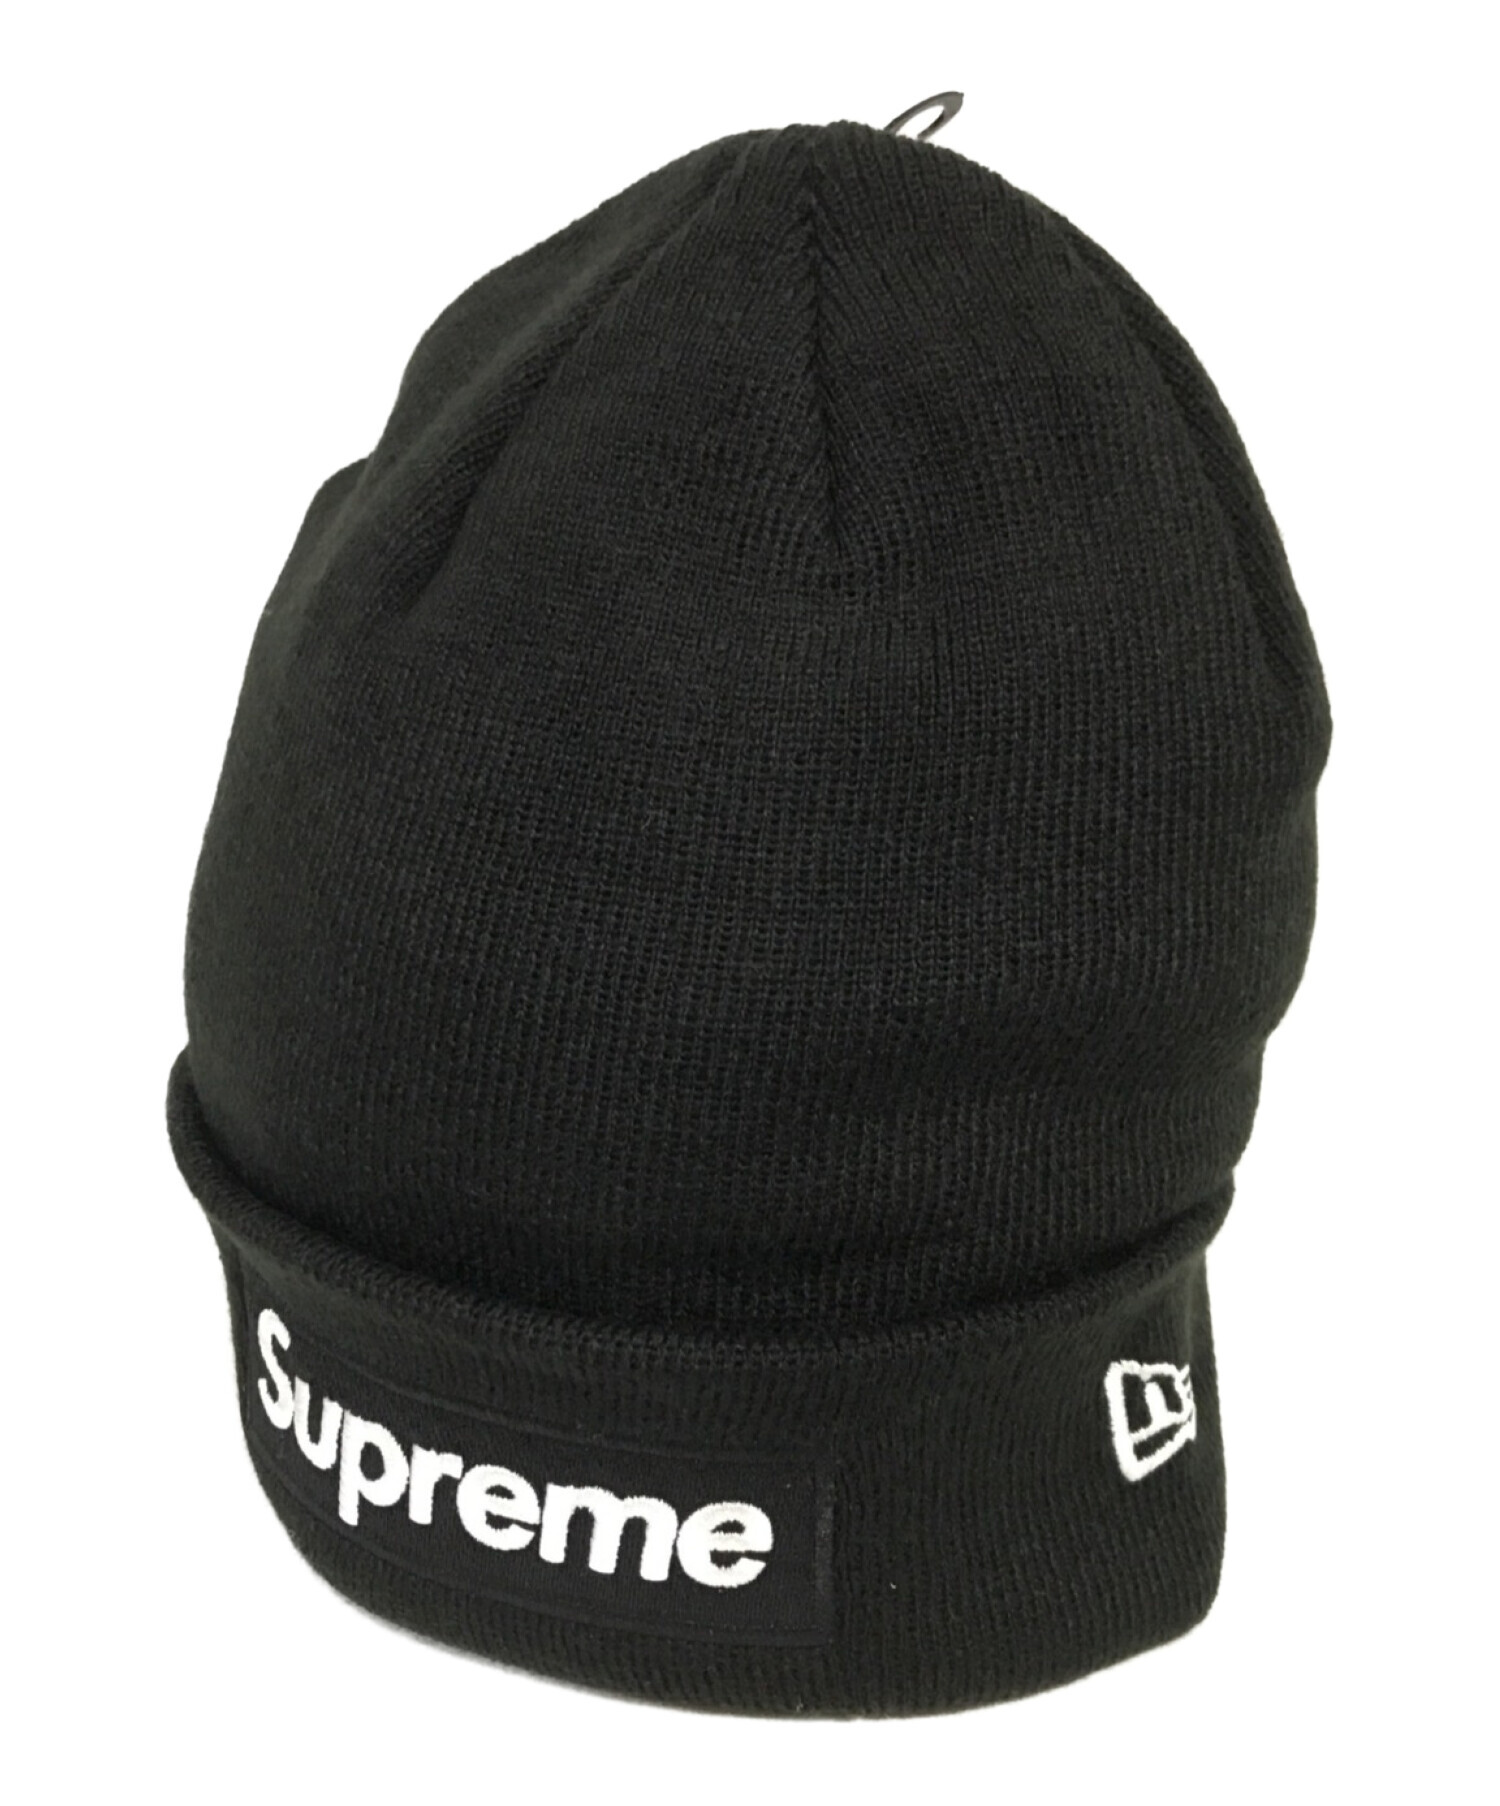 SUPREME (シュプリーム) New Era (ニューエラ) Box Logo Beanie ニット帽 ブラック